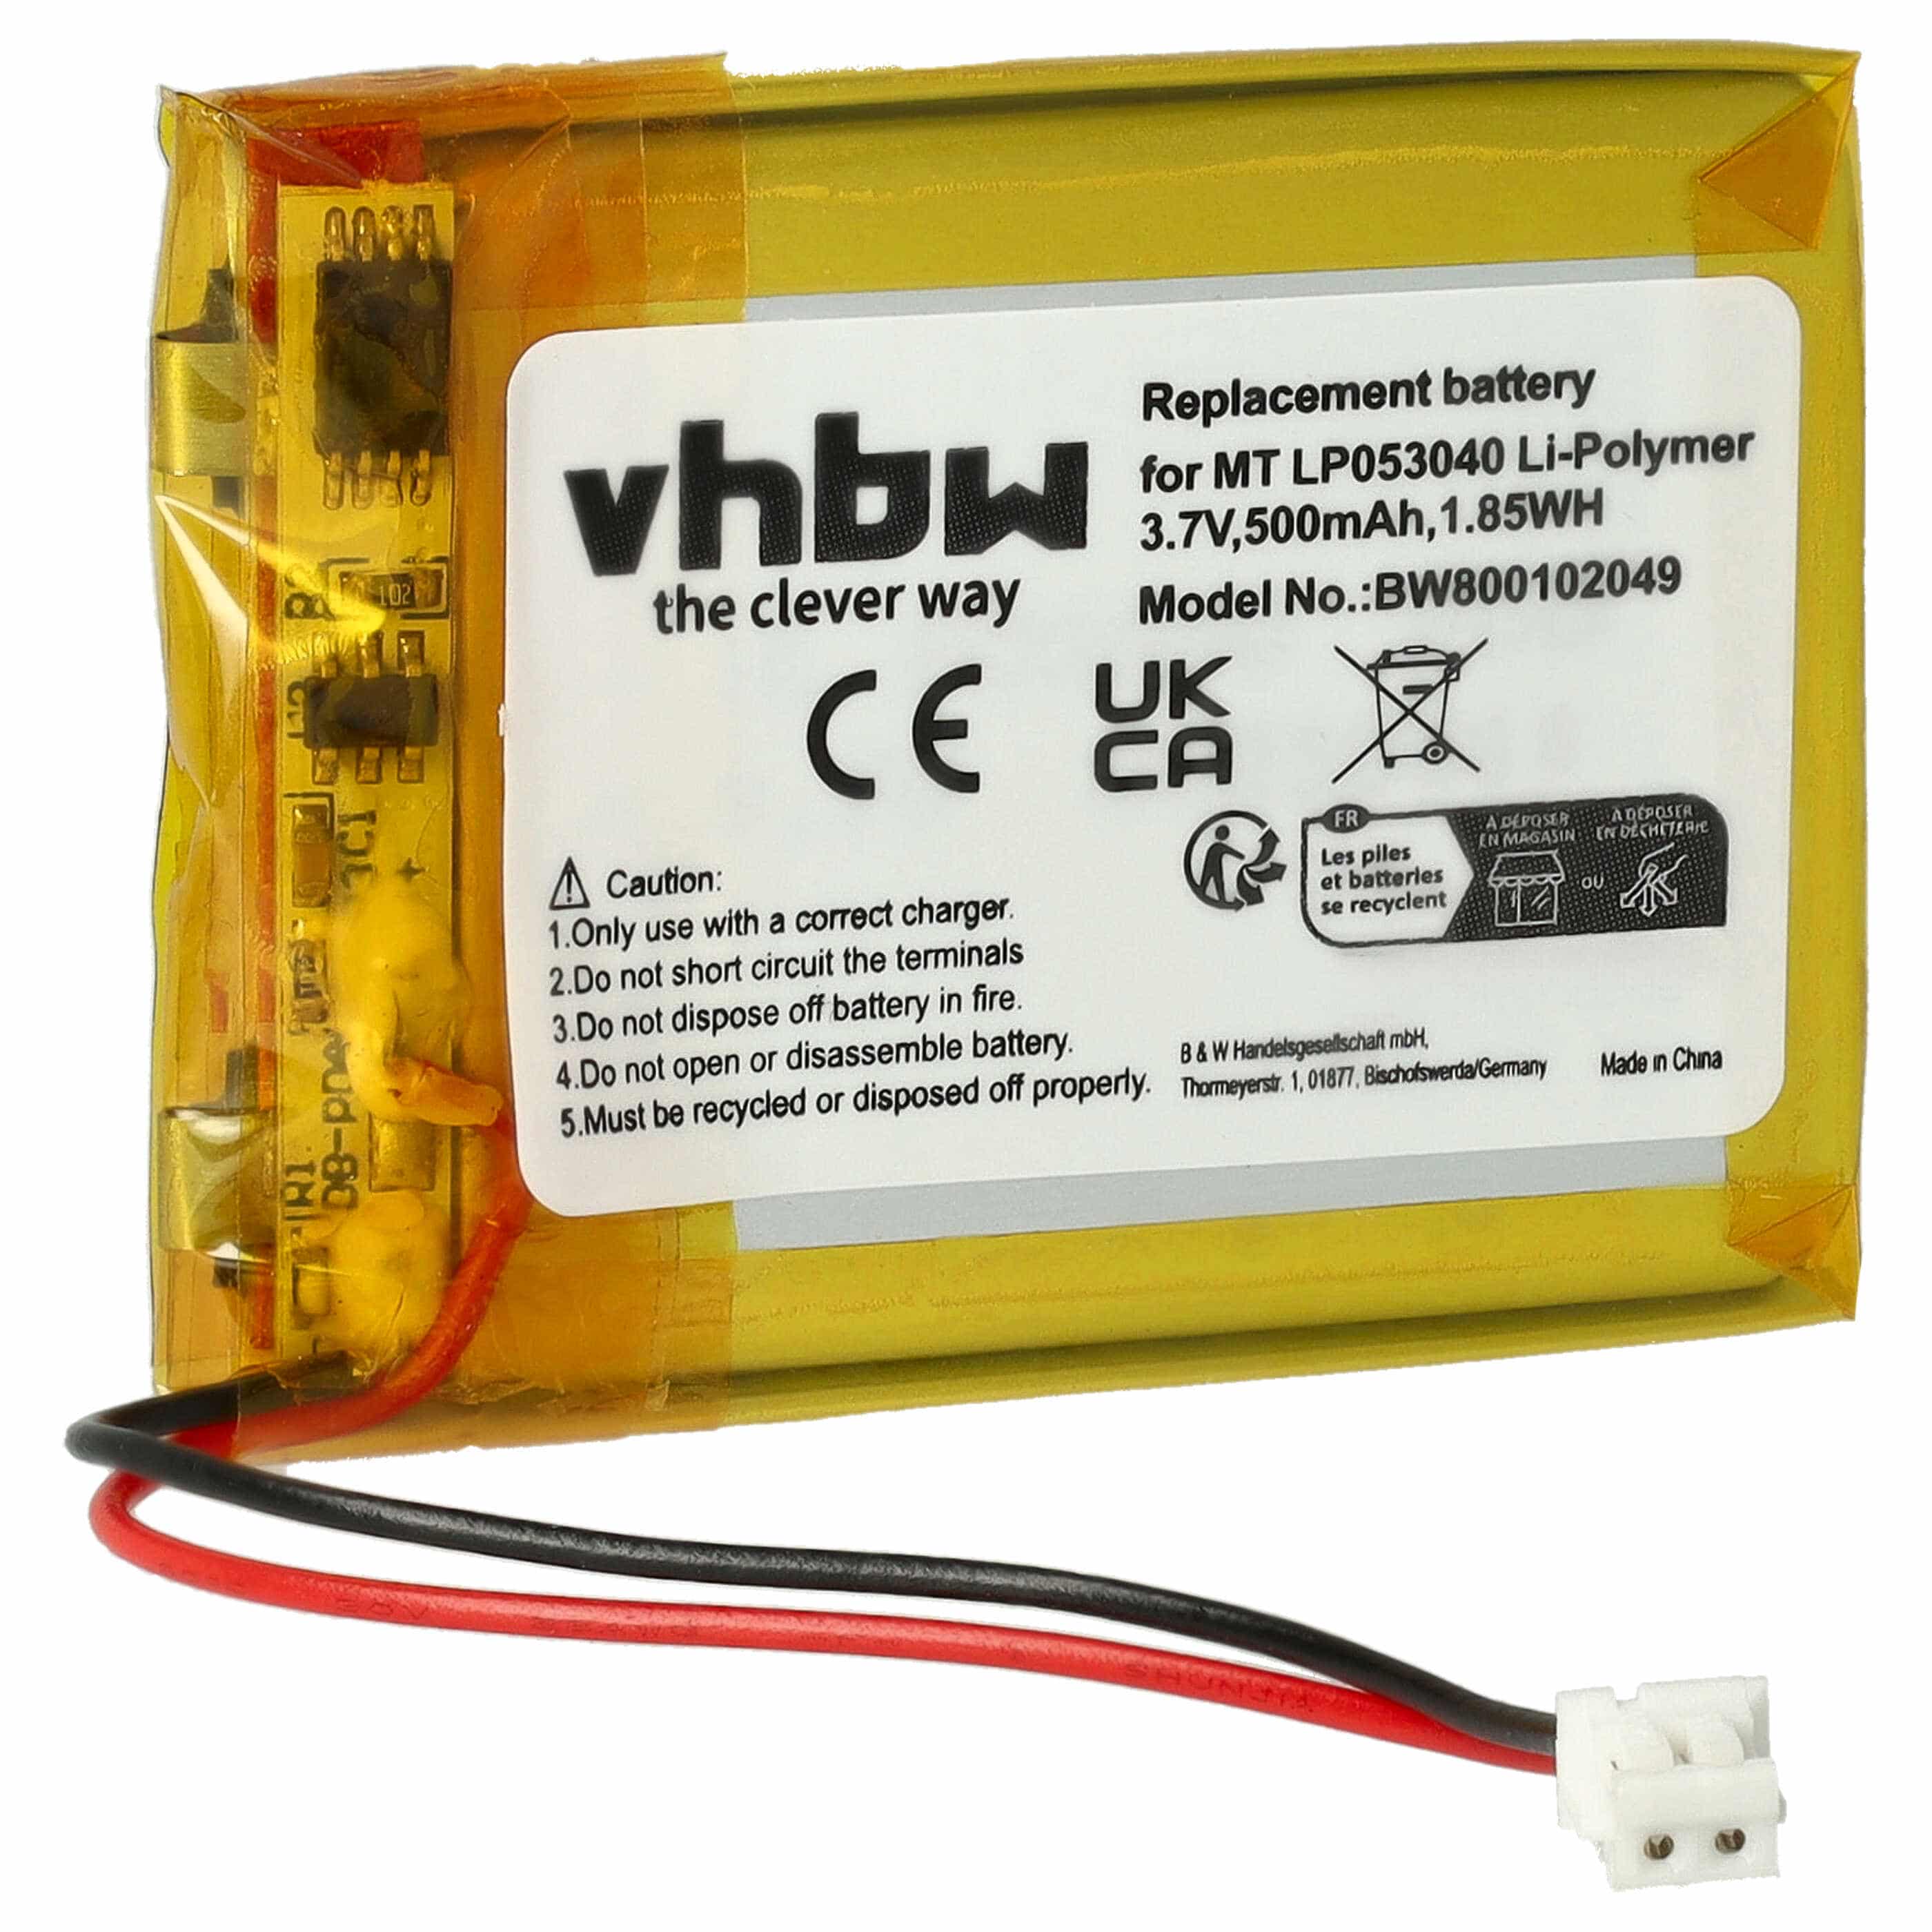 Batterie remplace MT LP053040 pour téléphone - 600mAh 3,7V Li-polymère